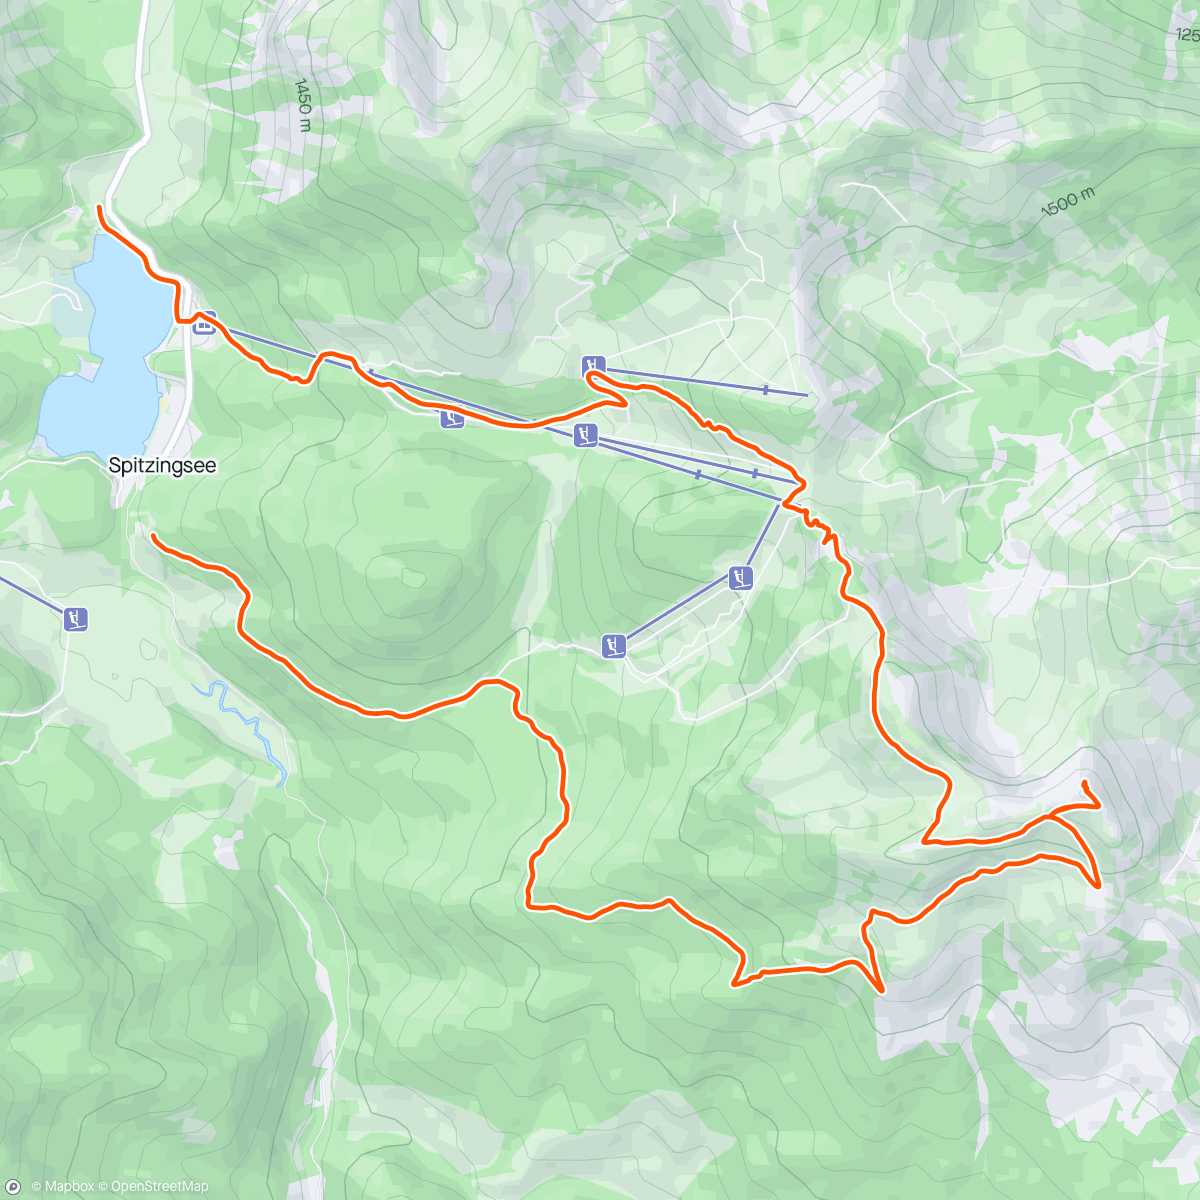 「Spitzingsee Loop」活動的地圖